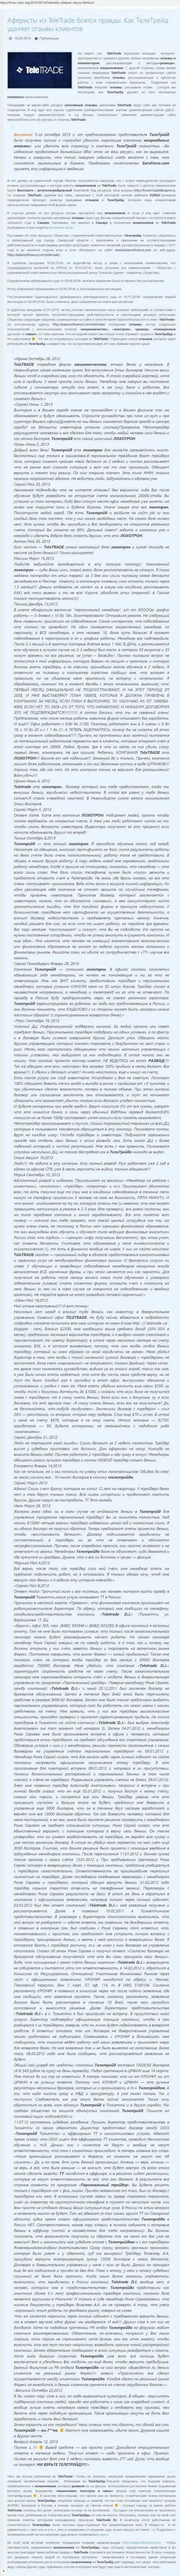 Доказательство ддос-атак в отношении недоброжелателей циничных мошенников TeleTrade Ru